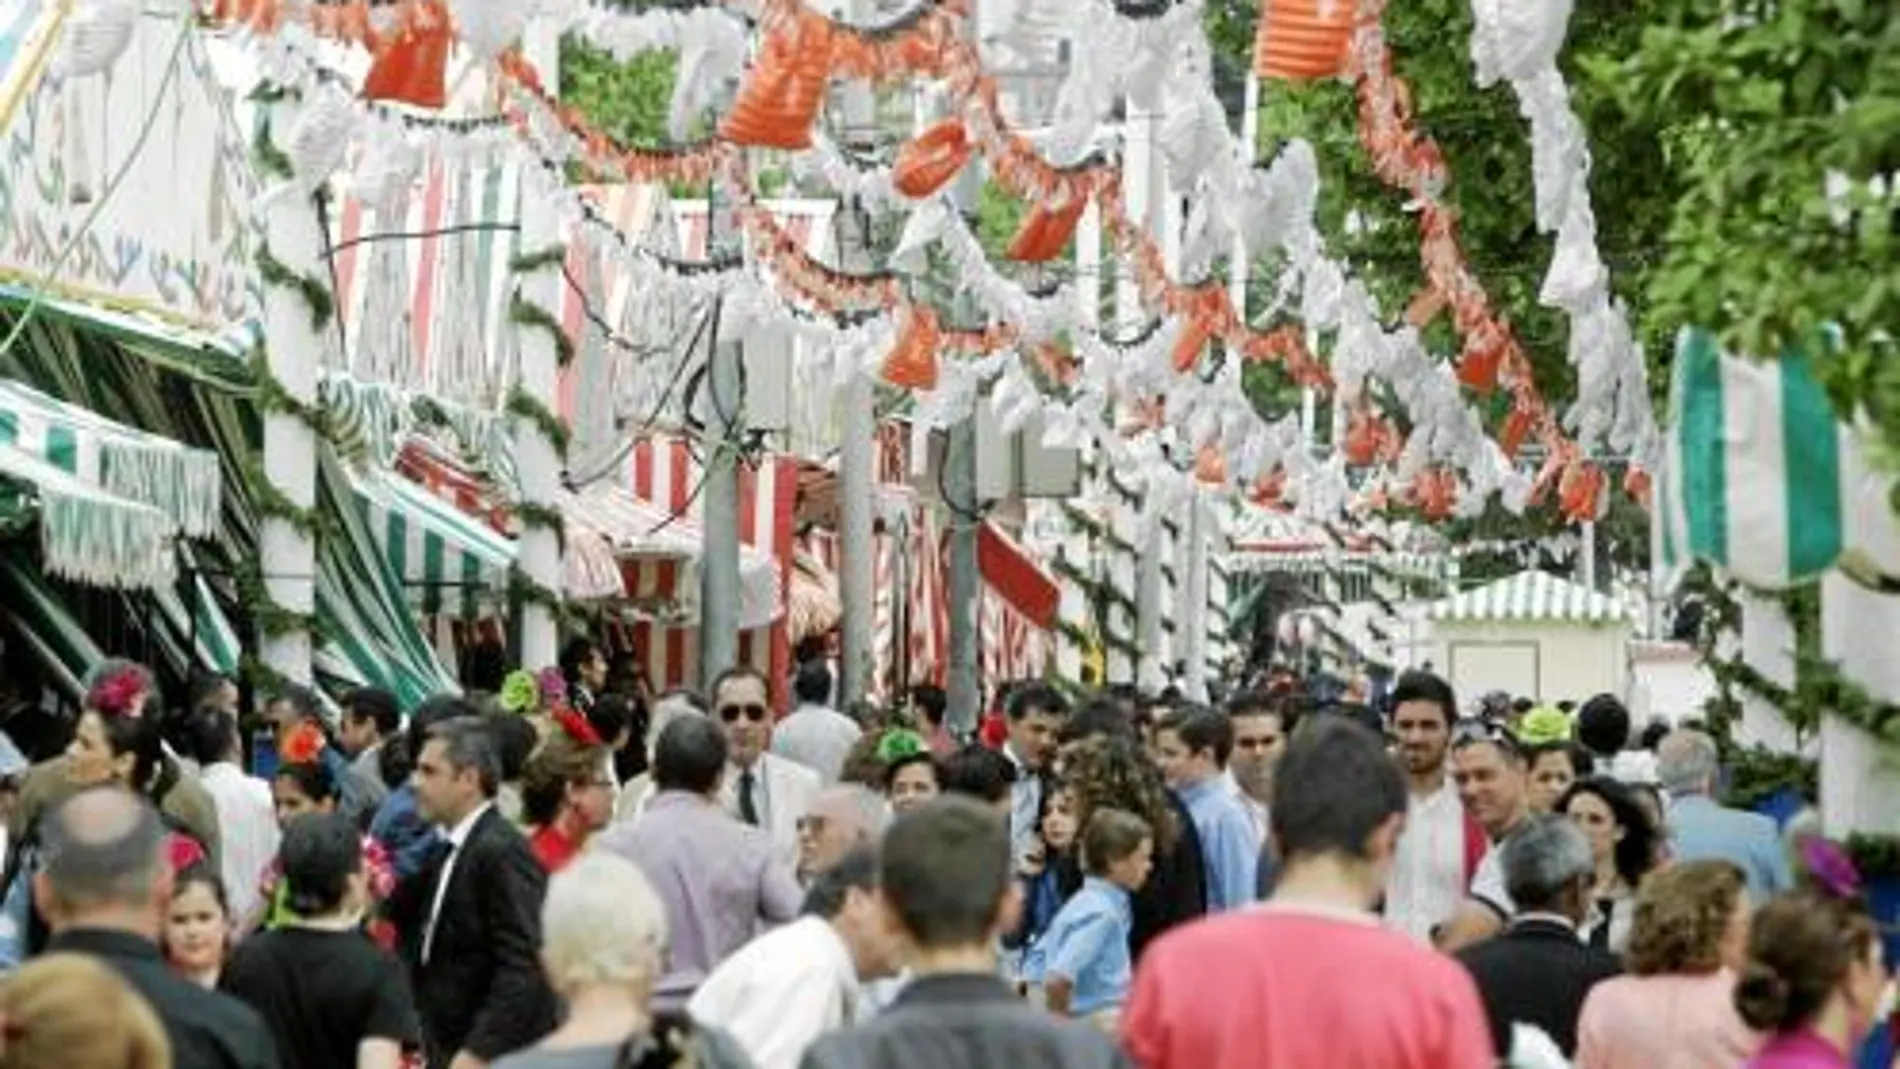 La delegada de Fiestas Mayores apuesta por Tablada en vez del Charco de la Pava para trasladar la Feria de Abril